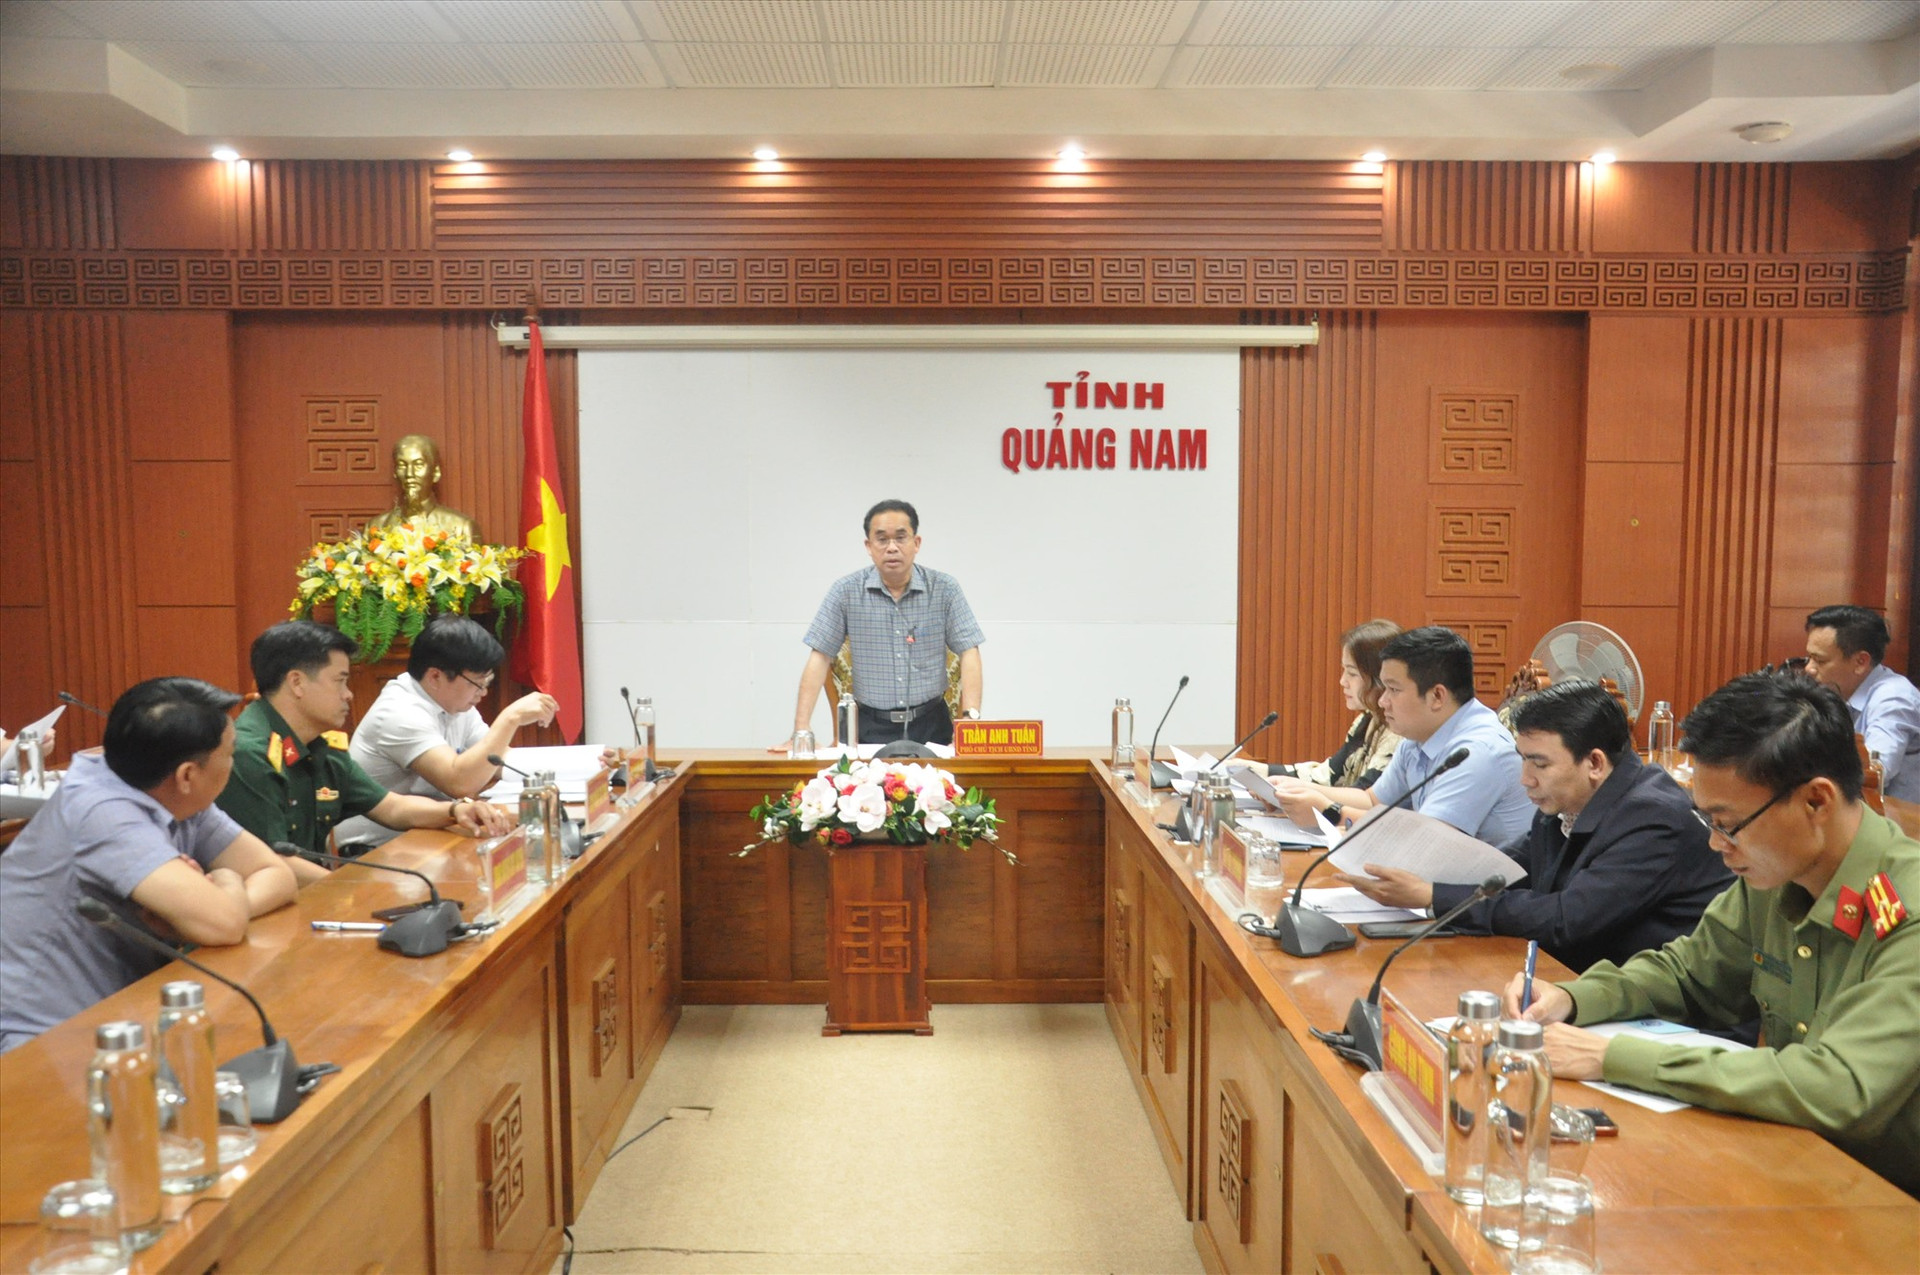 Phó Chủ tịch UBND tỉnh Trần Anh Tuấn chủ trì cuộc họp. Ảnh: X.P